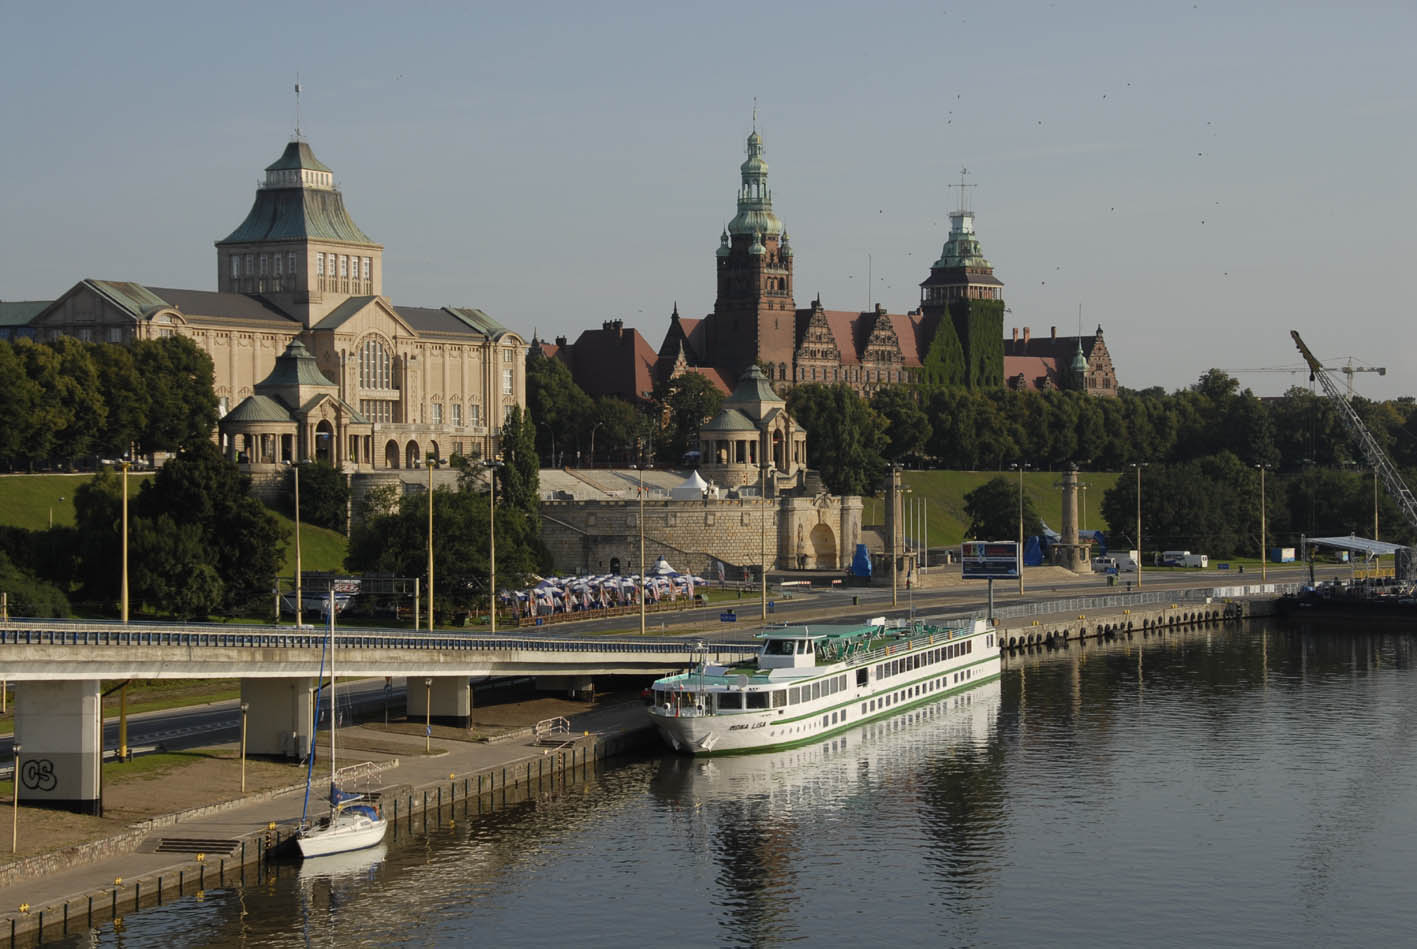 CroisiEurope bietet neu eine siebentägige Fluss-Kreuzfahrt zu den interessantesten Orten und Landschaften in Mecklenburg-Vorpommern an